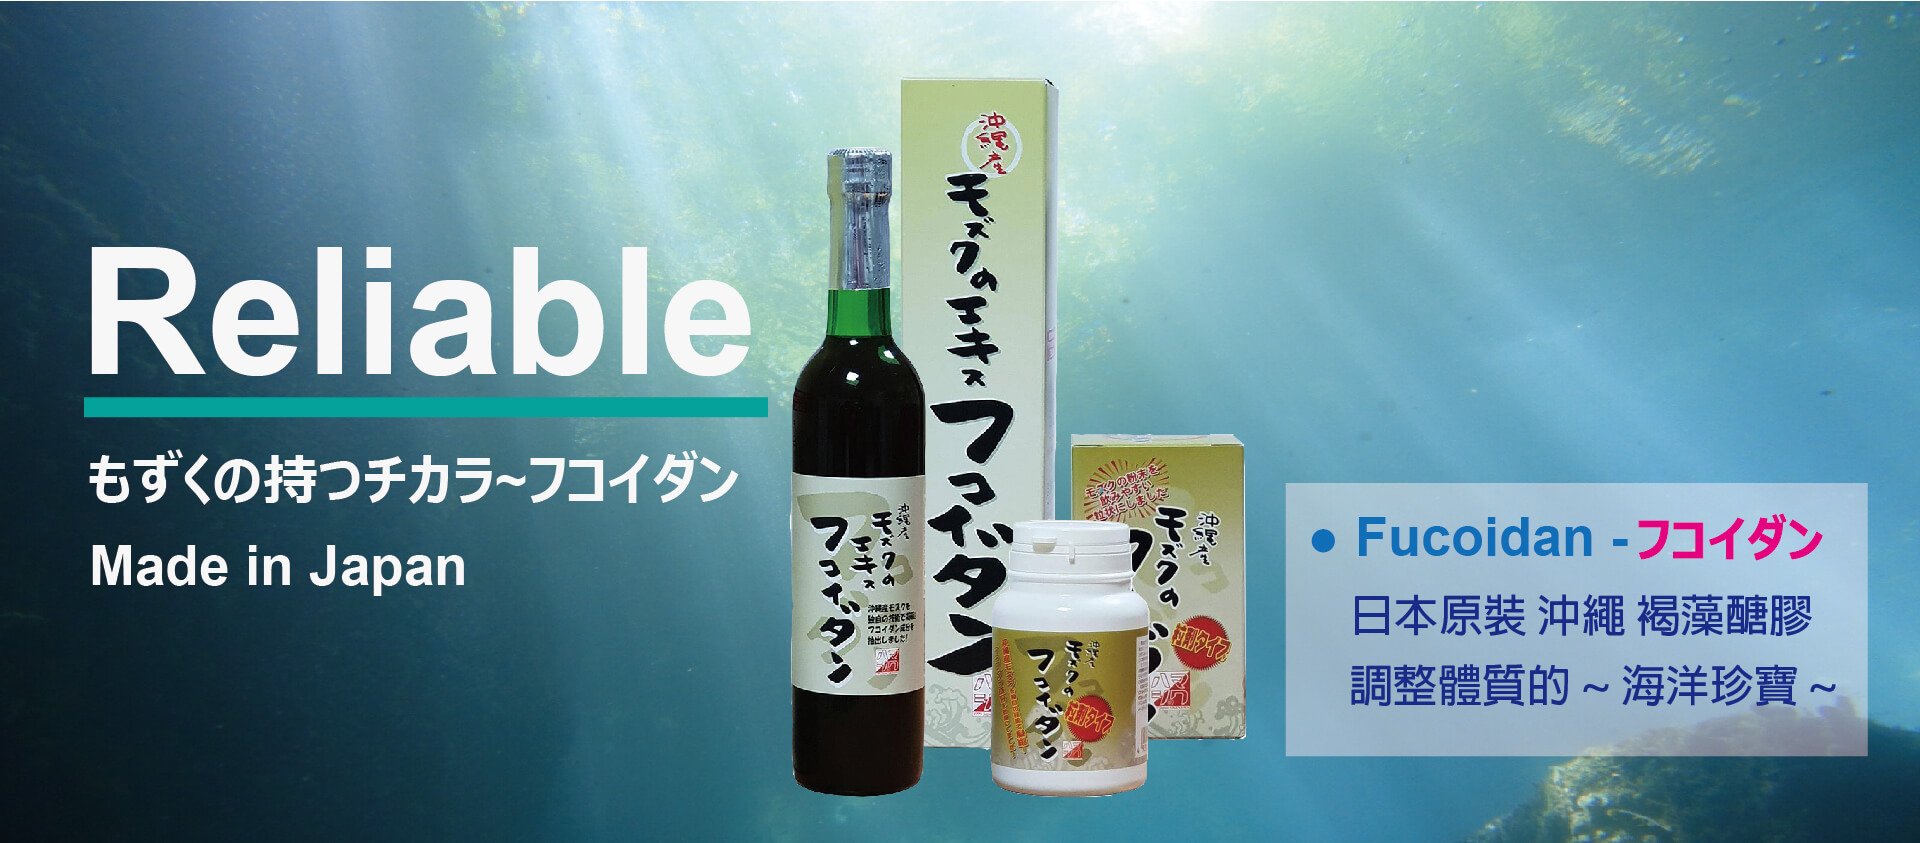 日本沖繩褐藻糖膠含多醣體有效成分含量最高，對身體有相當助益，沖繩也是有名的長壽村